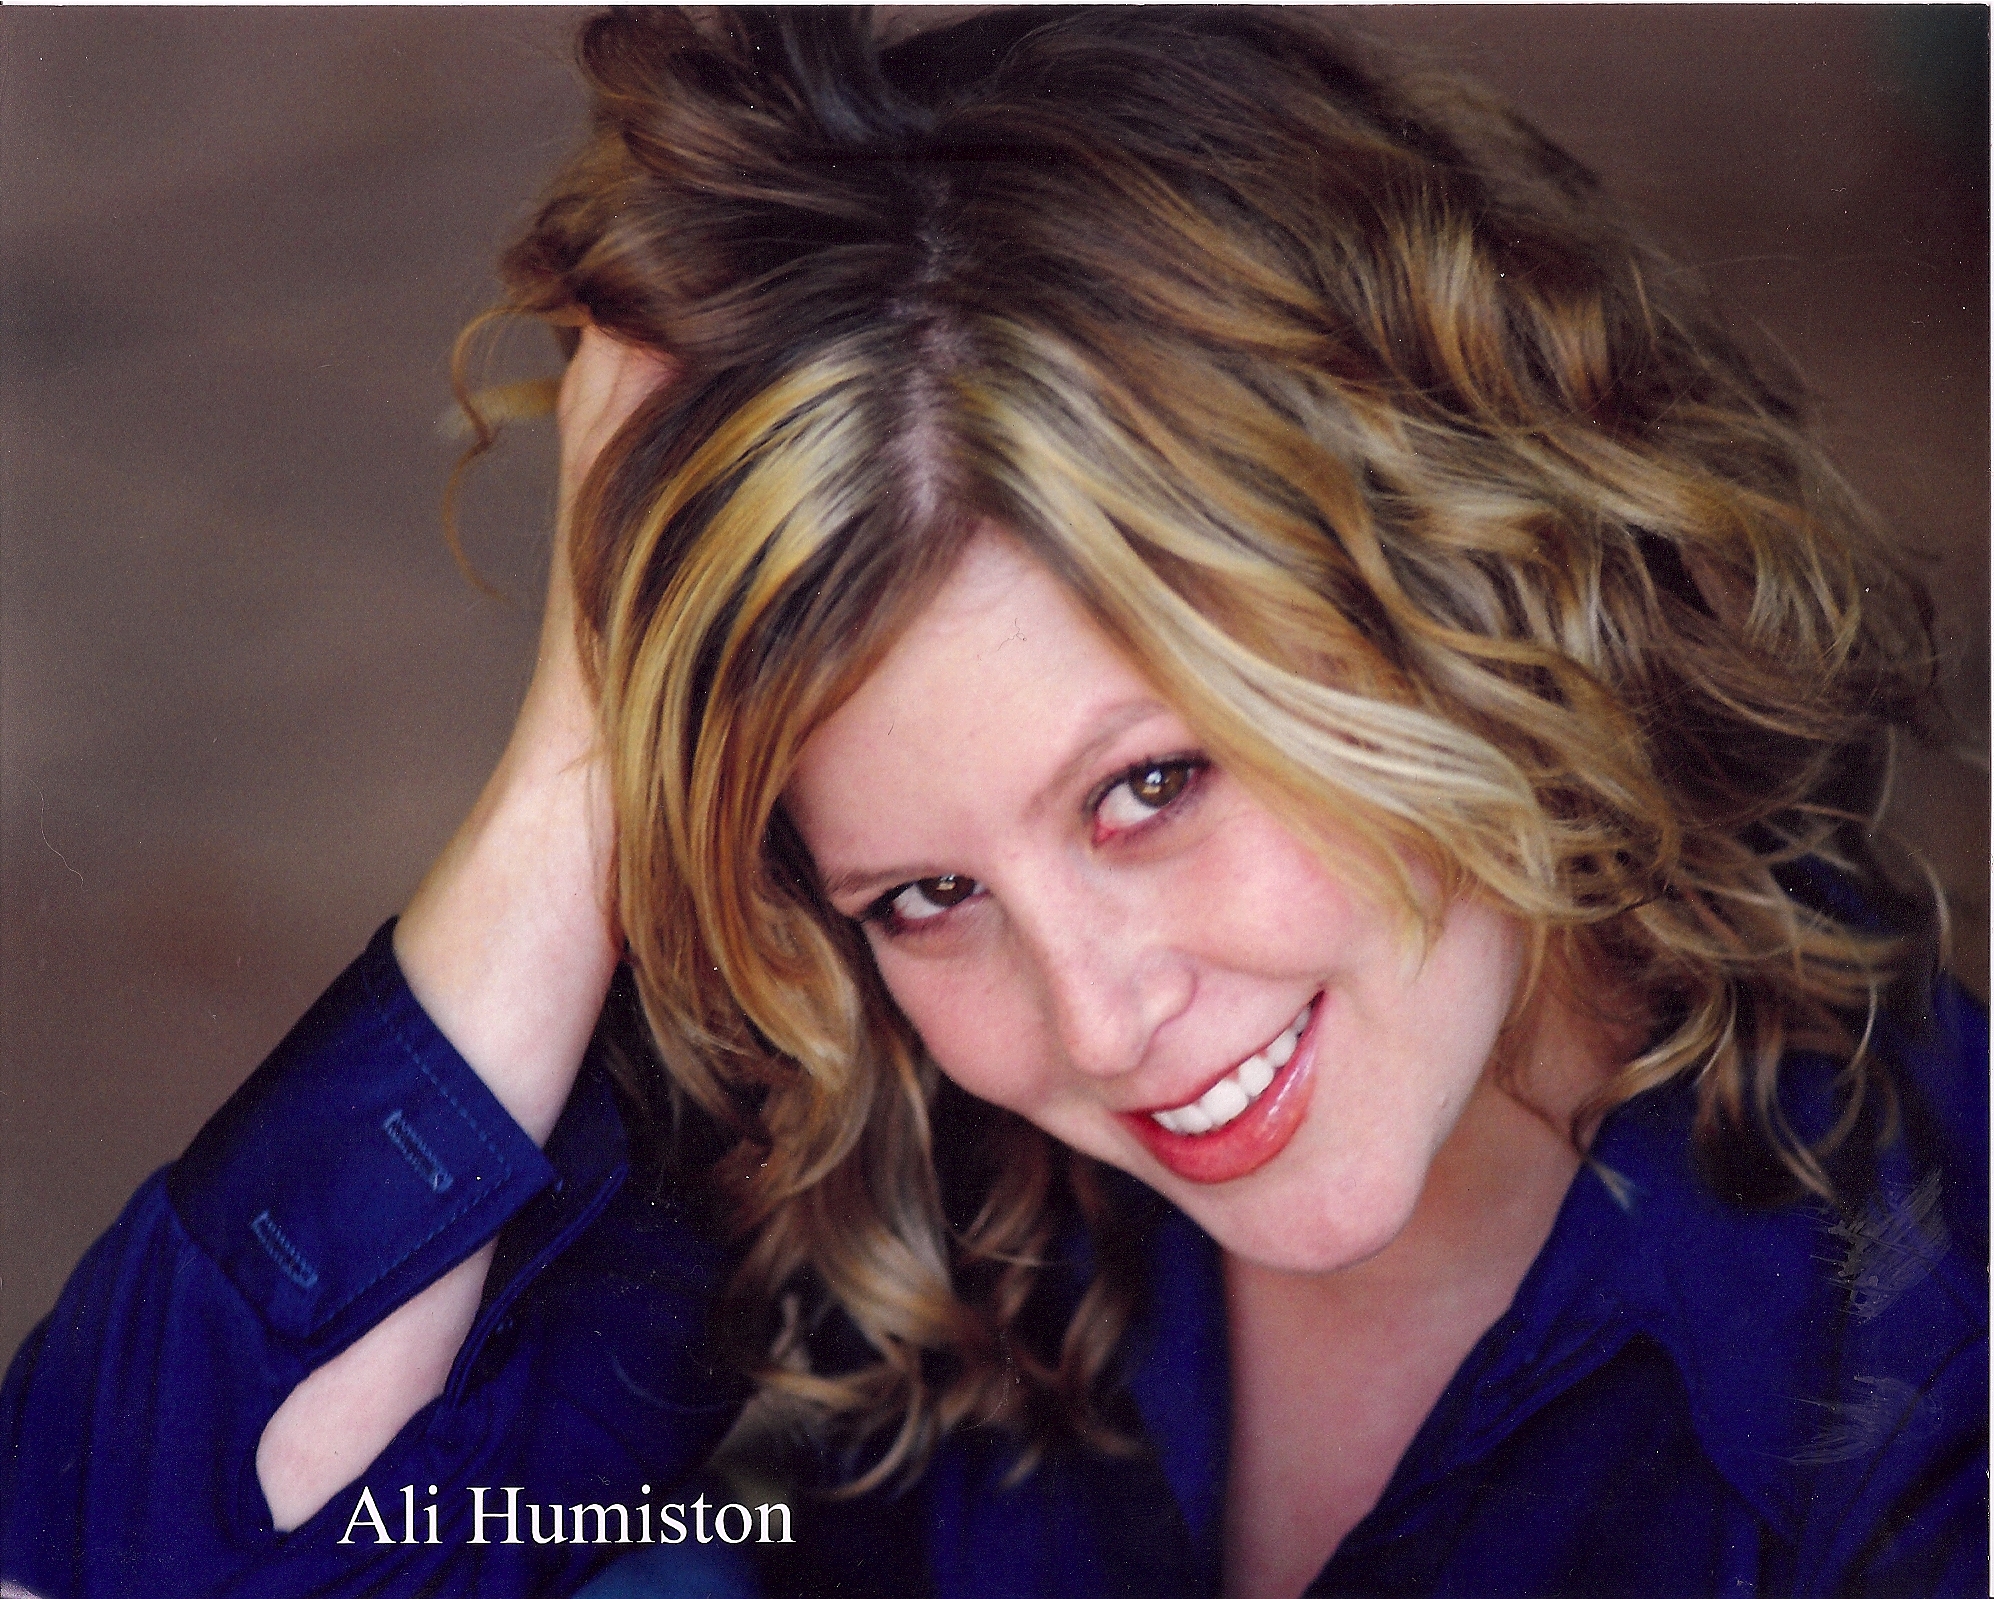 Ali Humiston